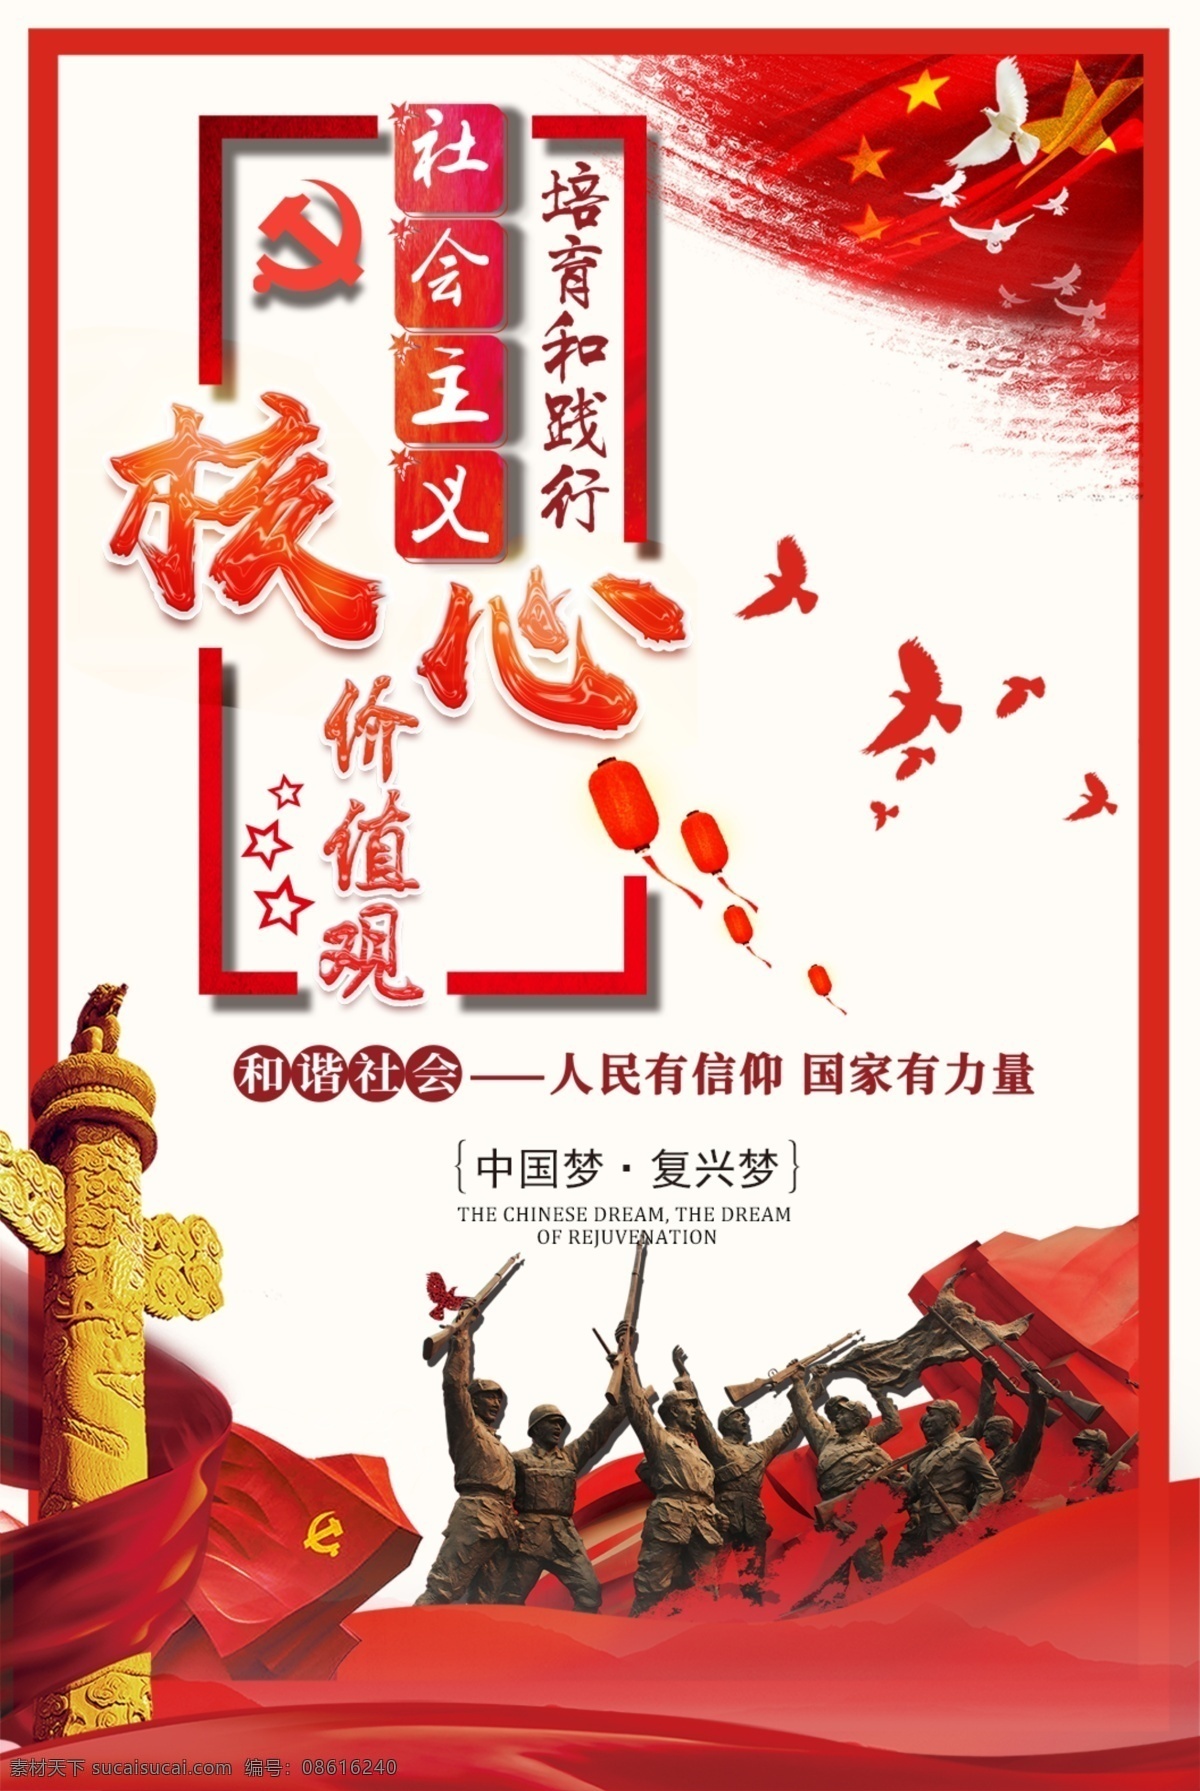 社会主义 核心 价值观 海报 中国梦 核心价值观 党建 文化展板 和谐社会 我的价值观 我的梦 人民有信仰 复兴梦 讲文明 爱国